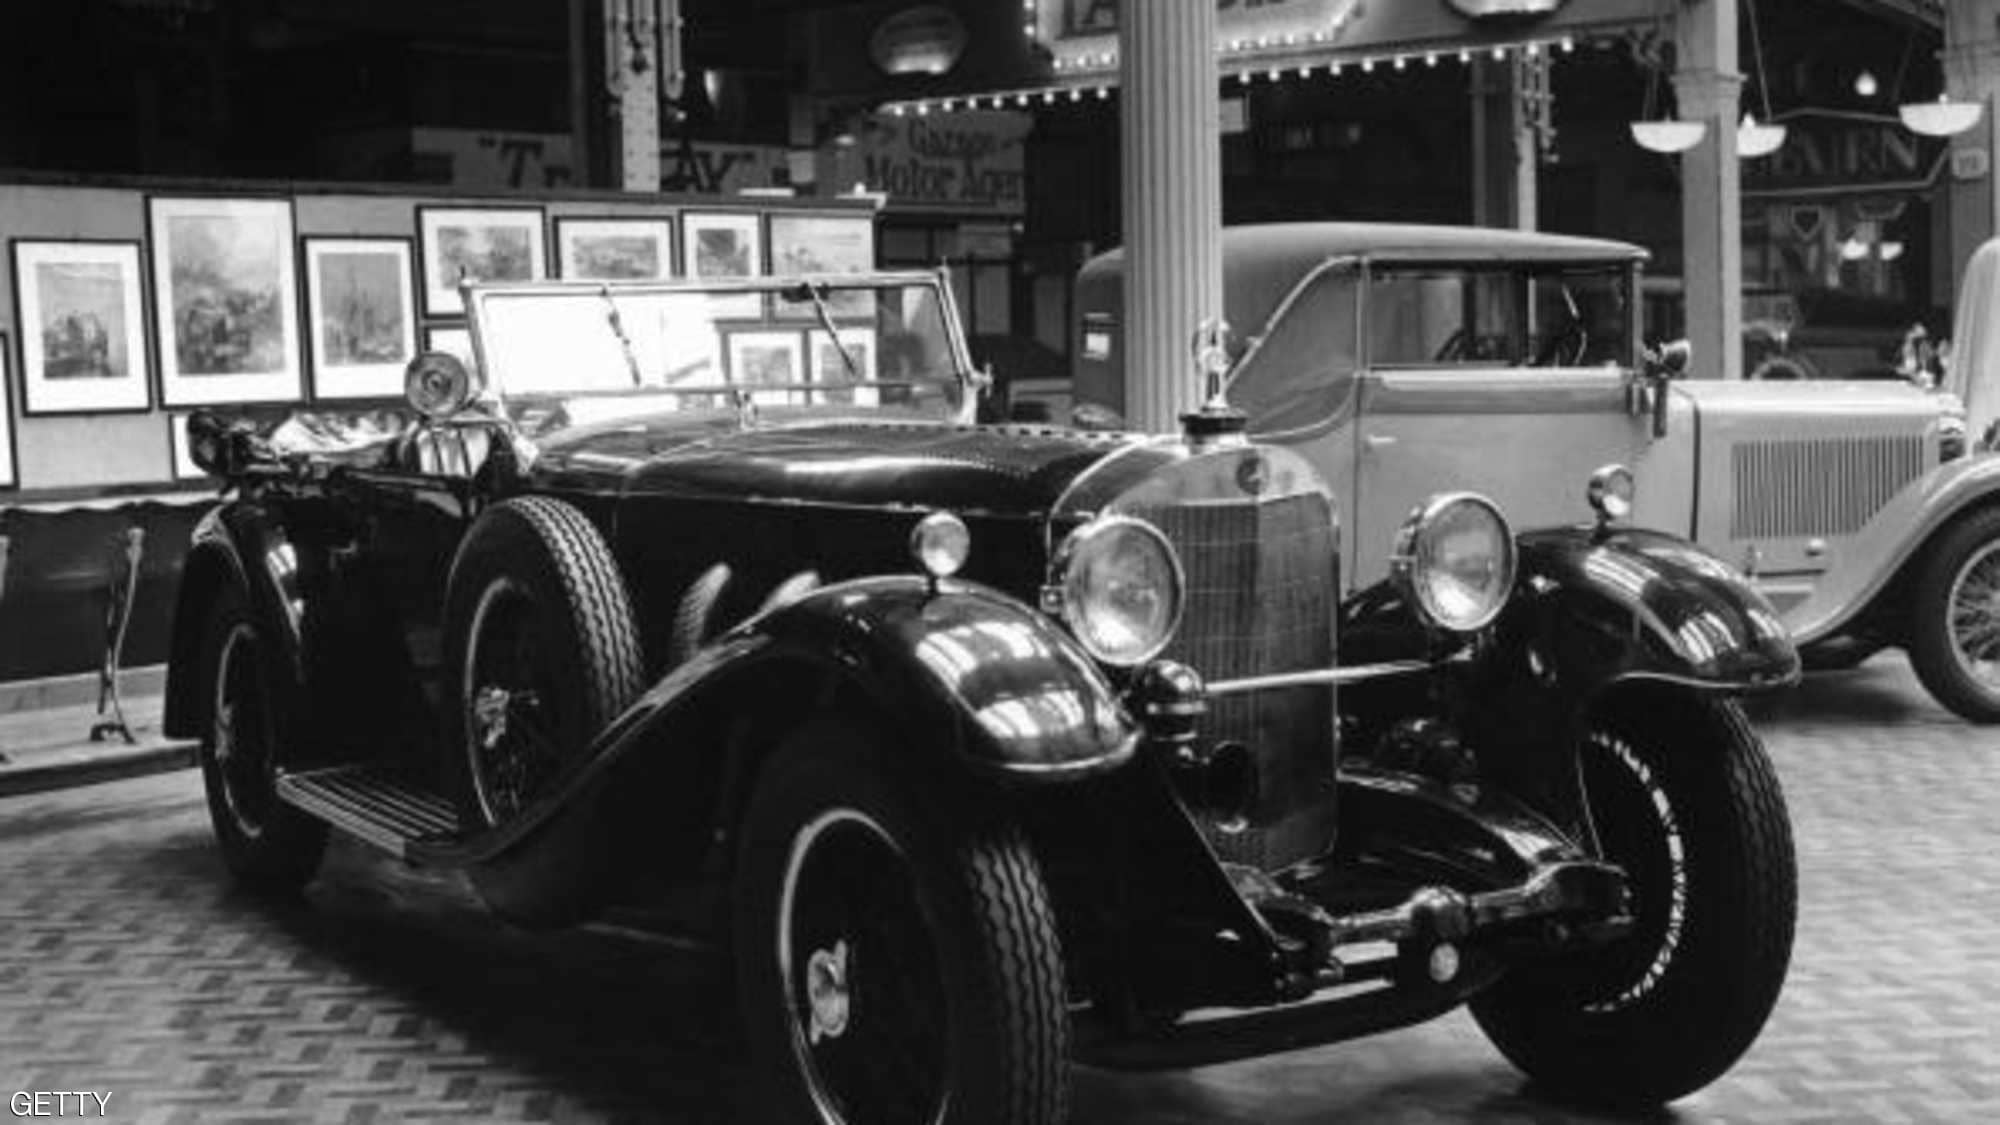 "بالصور" هذا ما بدت عليه السيارات قبل 100 عام من الآن 23